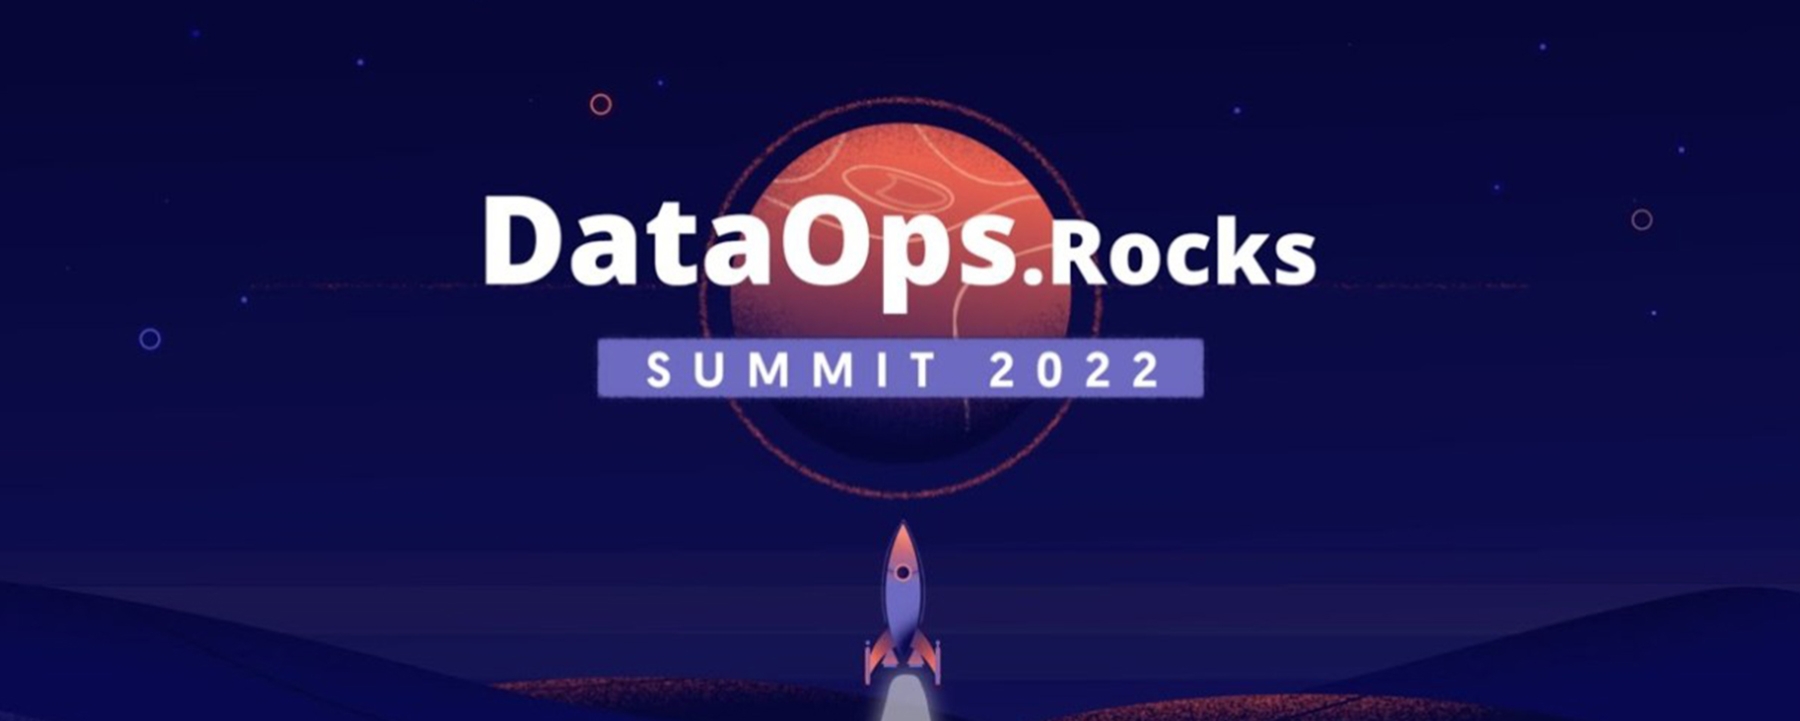 DataOps.Rocks Summit 2022